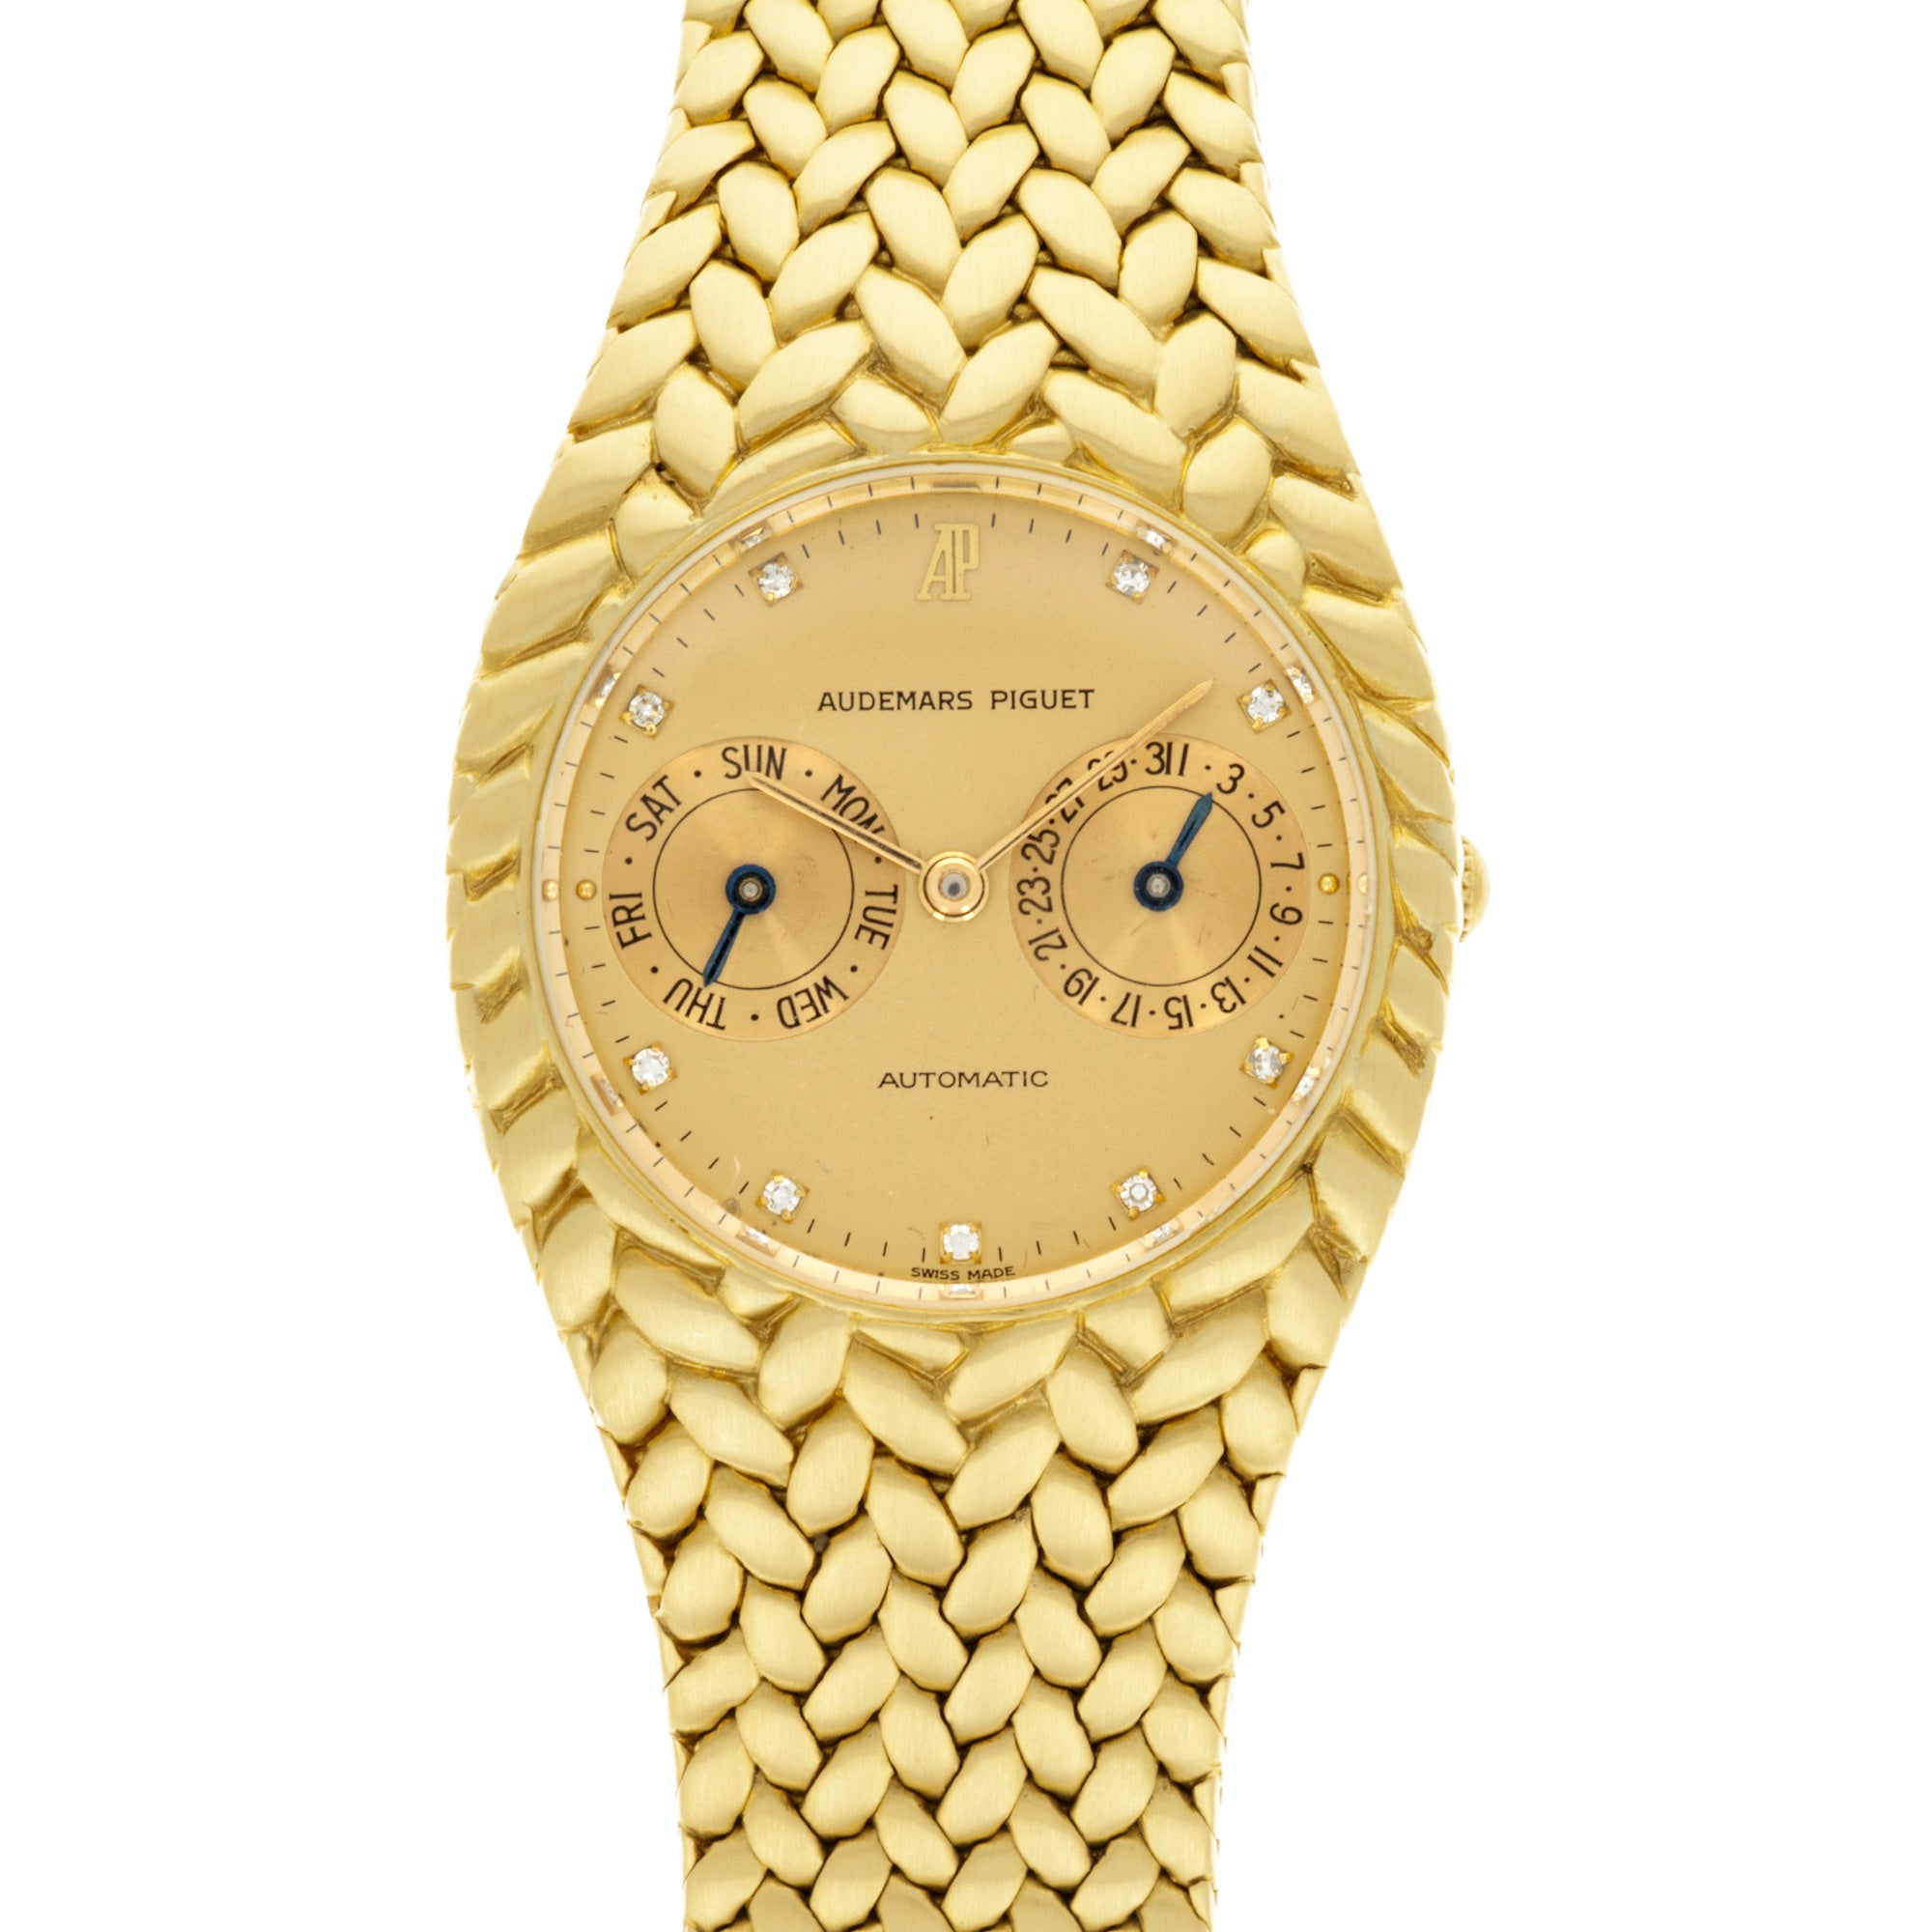 Audemars Piguet - Audemars Piguet Yellow Gold Cobra Calendar Watch - The Keystone Watches